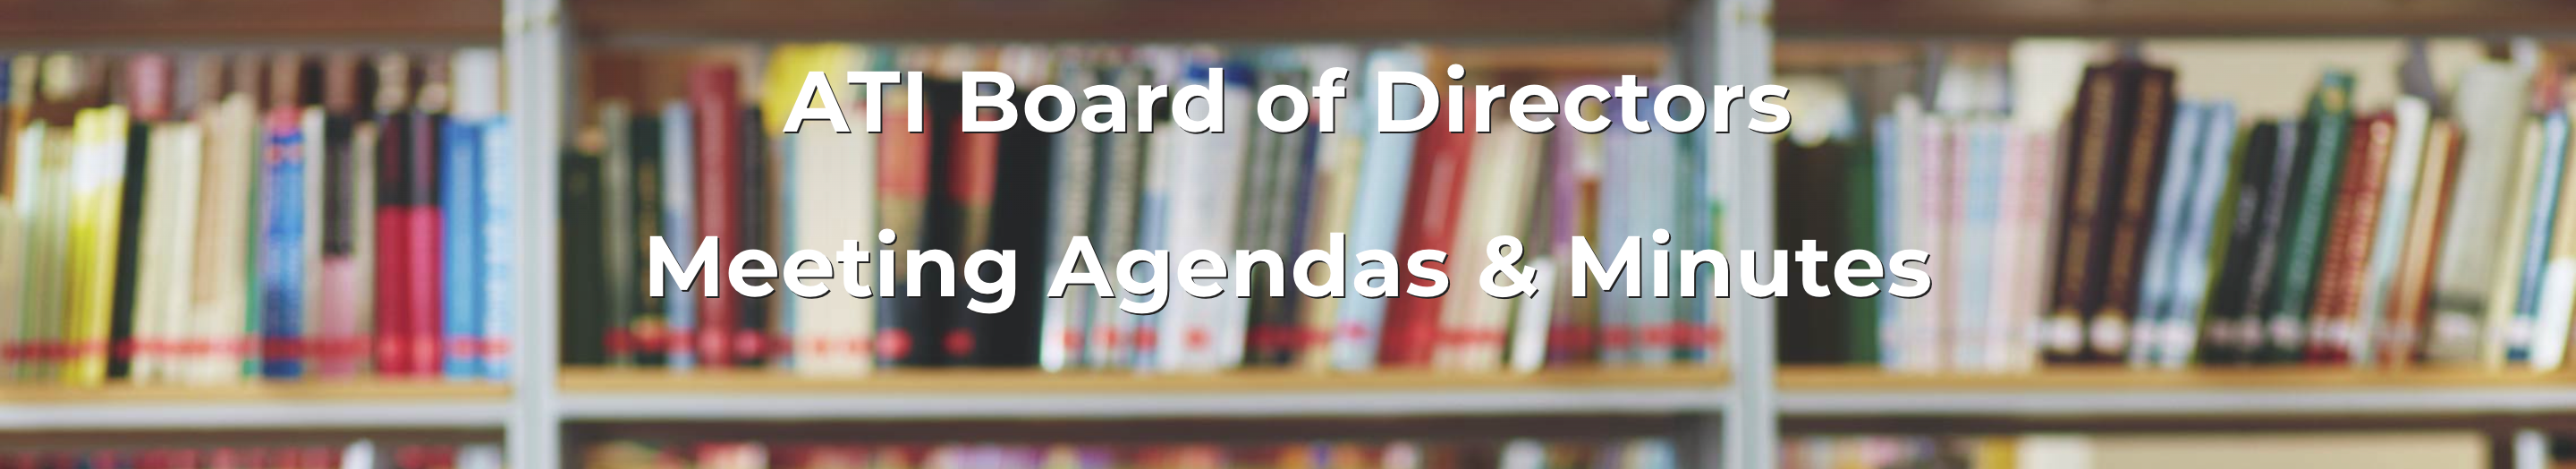 ACCS Board of Directors Meeting Agendas & Minutes